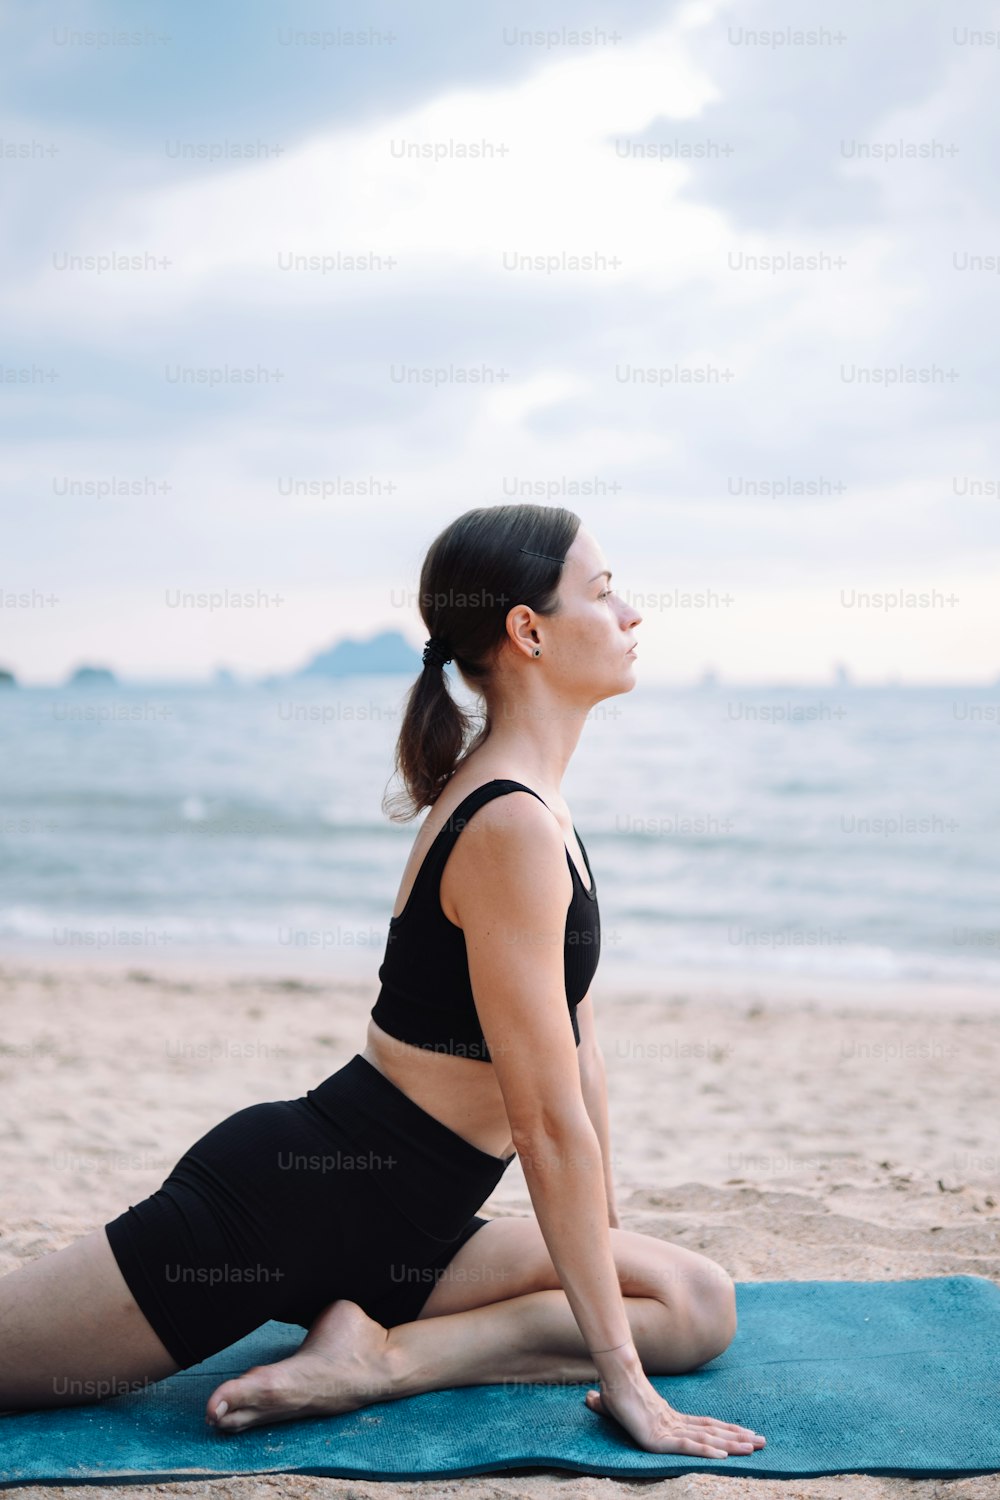 Une femme est assise sur une serviette sur la plage